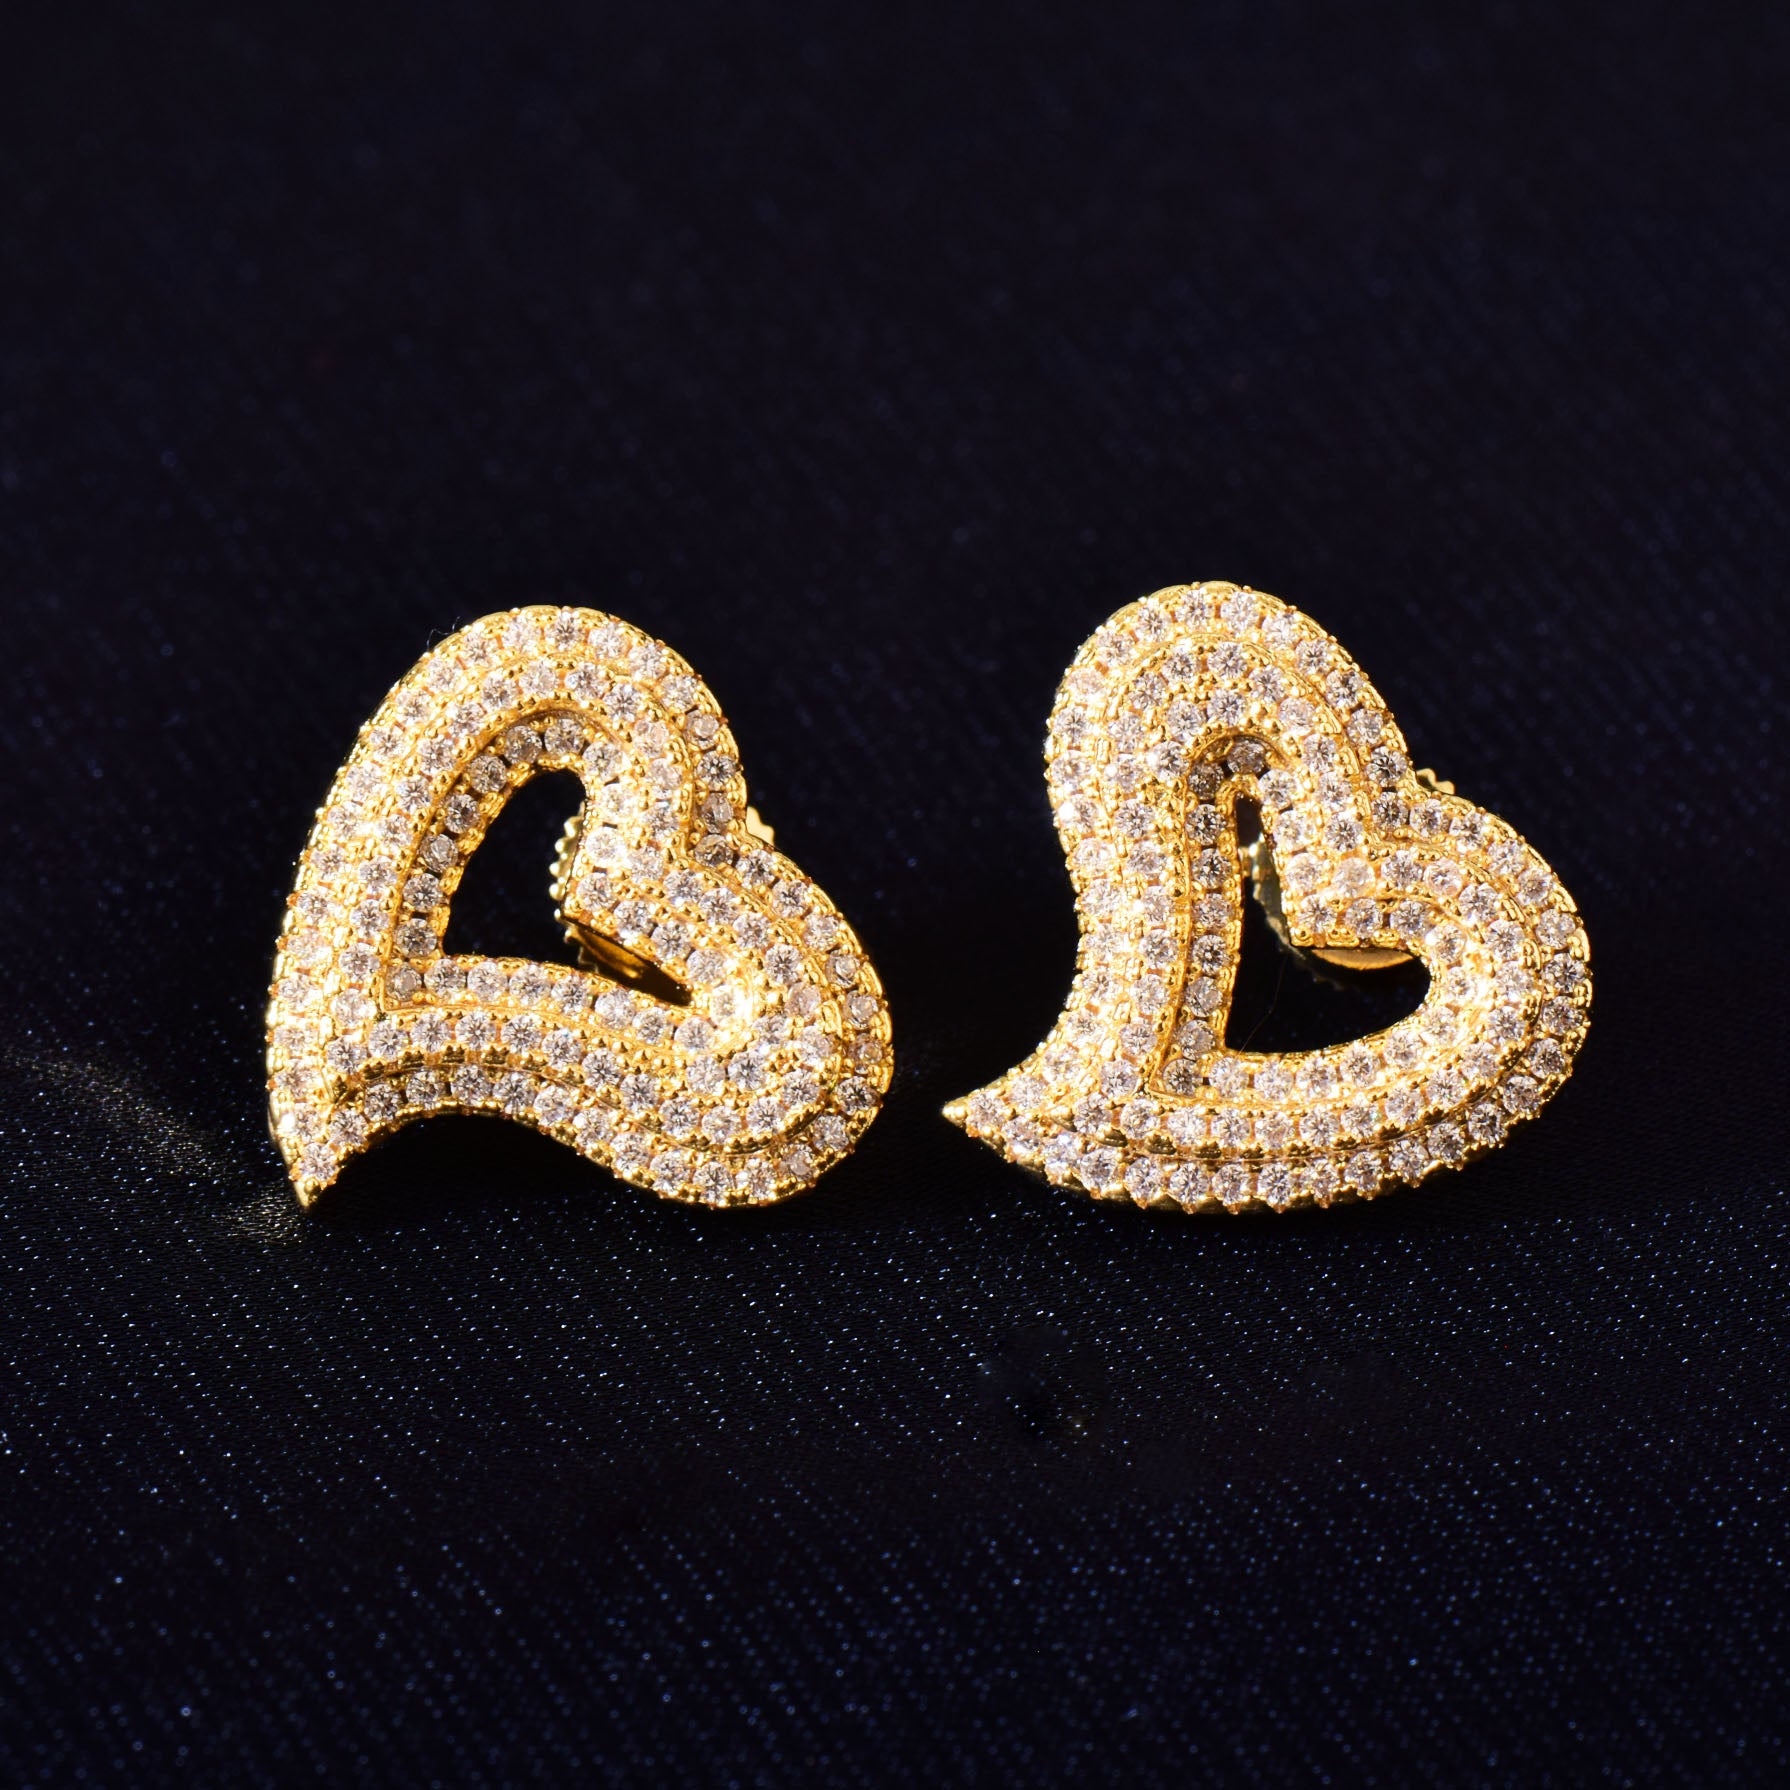 Diamond Heart Earrings | Heart Stud Earrings | Heart Earrings